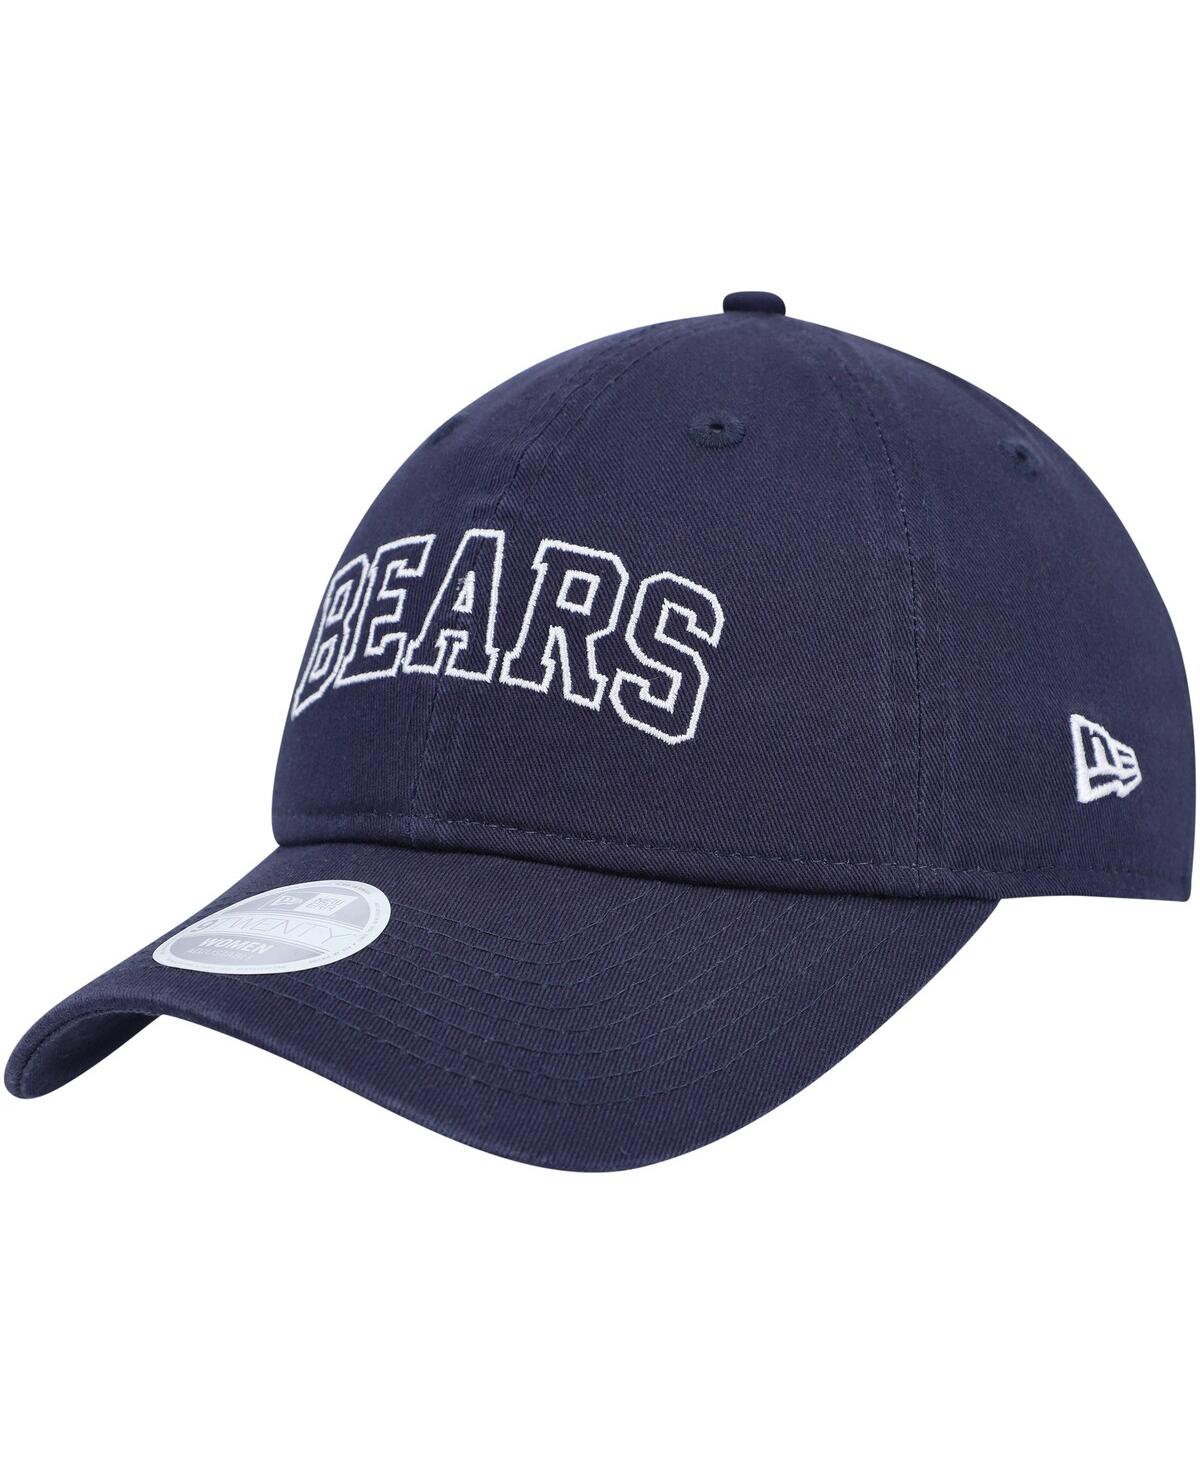 Shop New Era Women's  Navy Chicago Bears Collegiate 9twenty Adjustable Hat